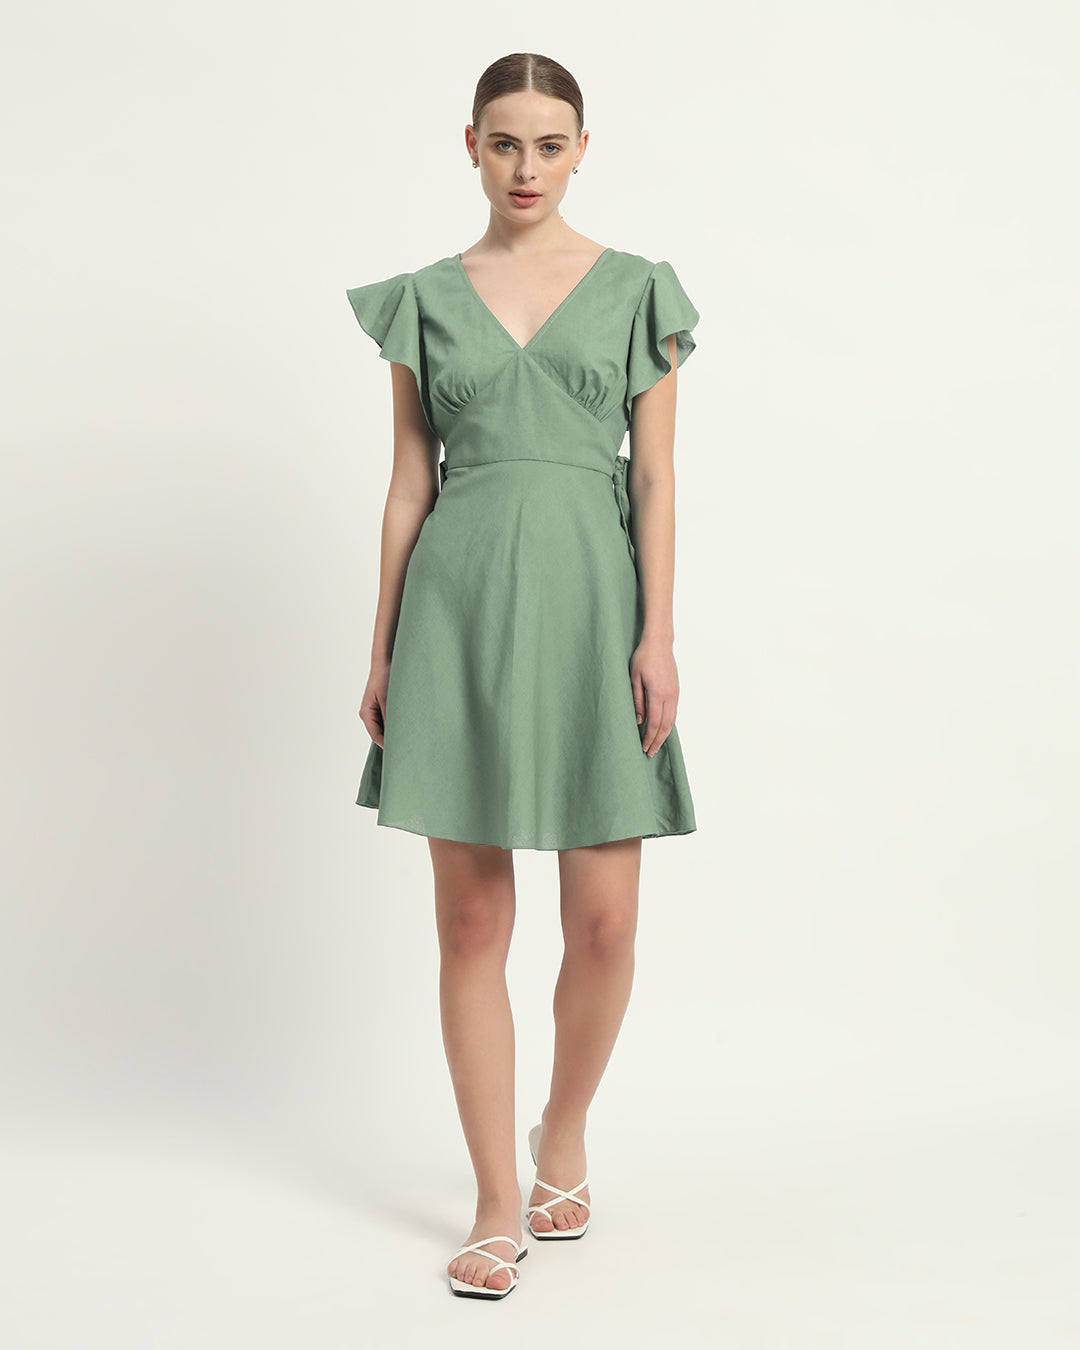 The Mint Fairlie Cotton Dress